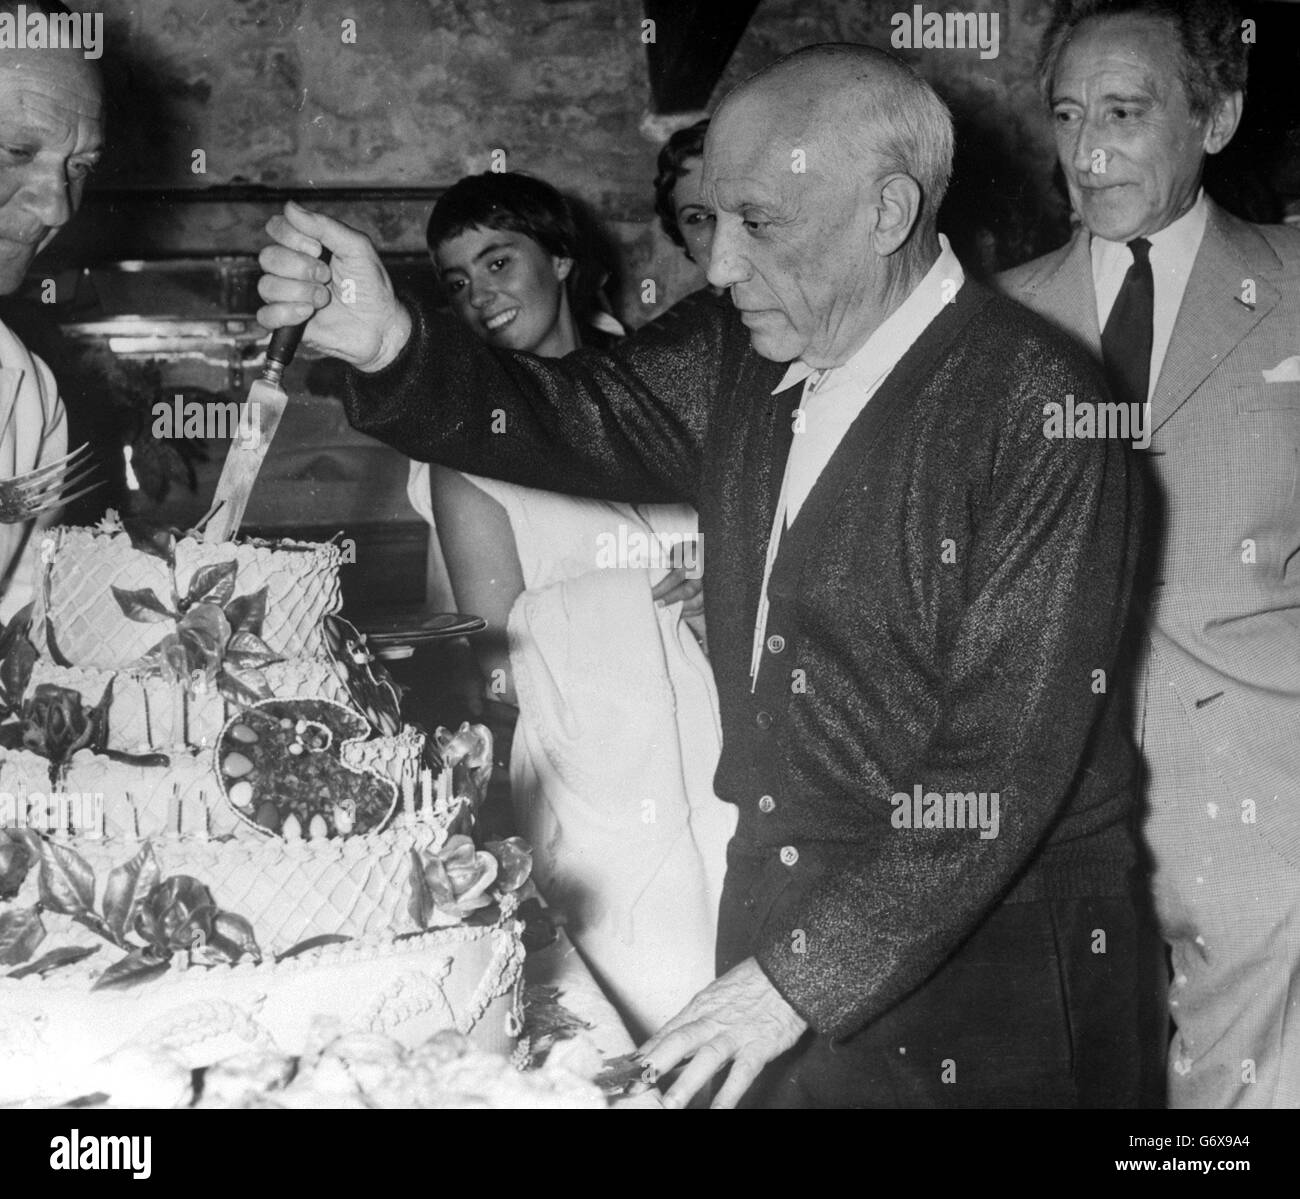 L'artista spagnolo Pablo Picasso immerge il coltello in una torta sostanziosa, decorata con tavolette, durante le celebrazioni del suo 75° compleanno a casa sua a Vallauris. A destra, dietro Picasso, è il suo amico, il poeta e drammaturgo francese Jean Cocteau. Picasso fu ospite d'onore di una festa data dai vasai di Vallauris in onore dei suoi successi, e della fama e della prosperità che ha acquistato a Vallauris. Foto Stock